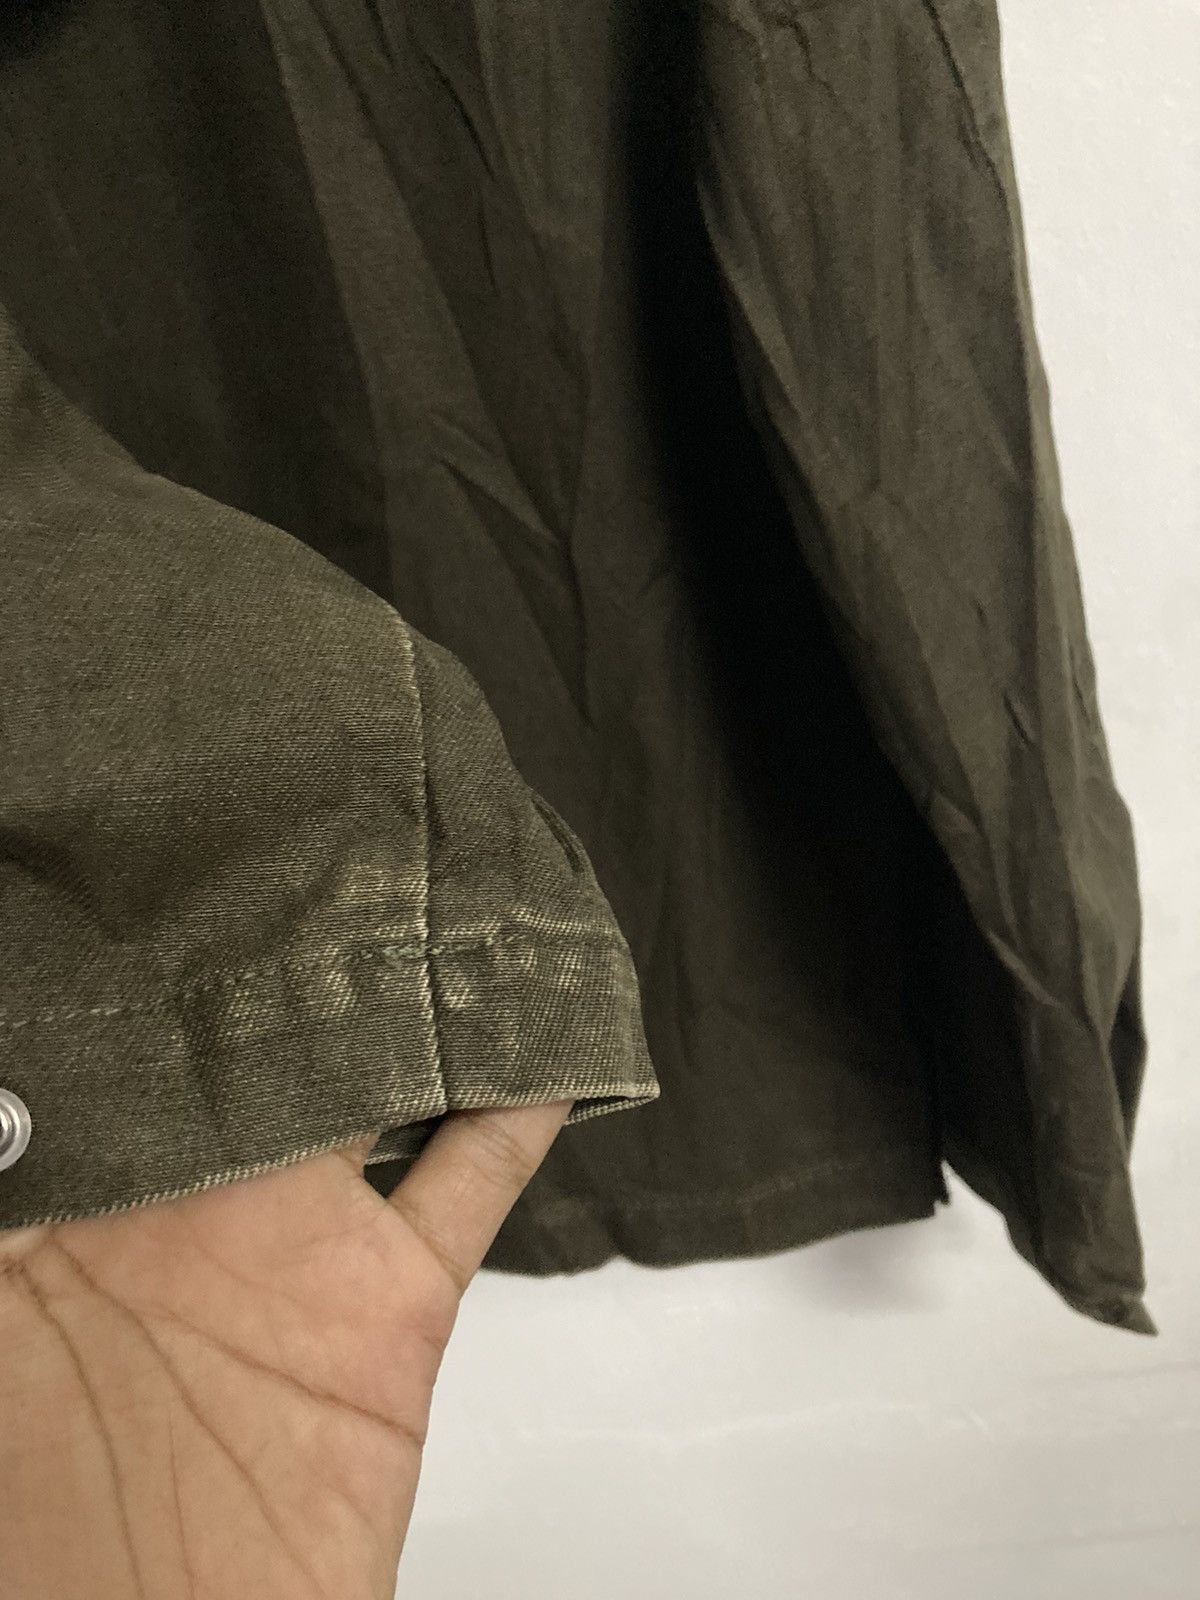 Burberrys Blue Label Hooded Jacket in Size 38 - 17